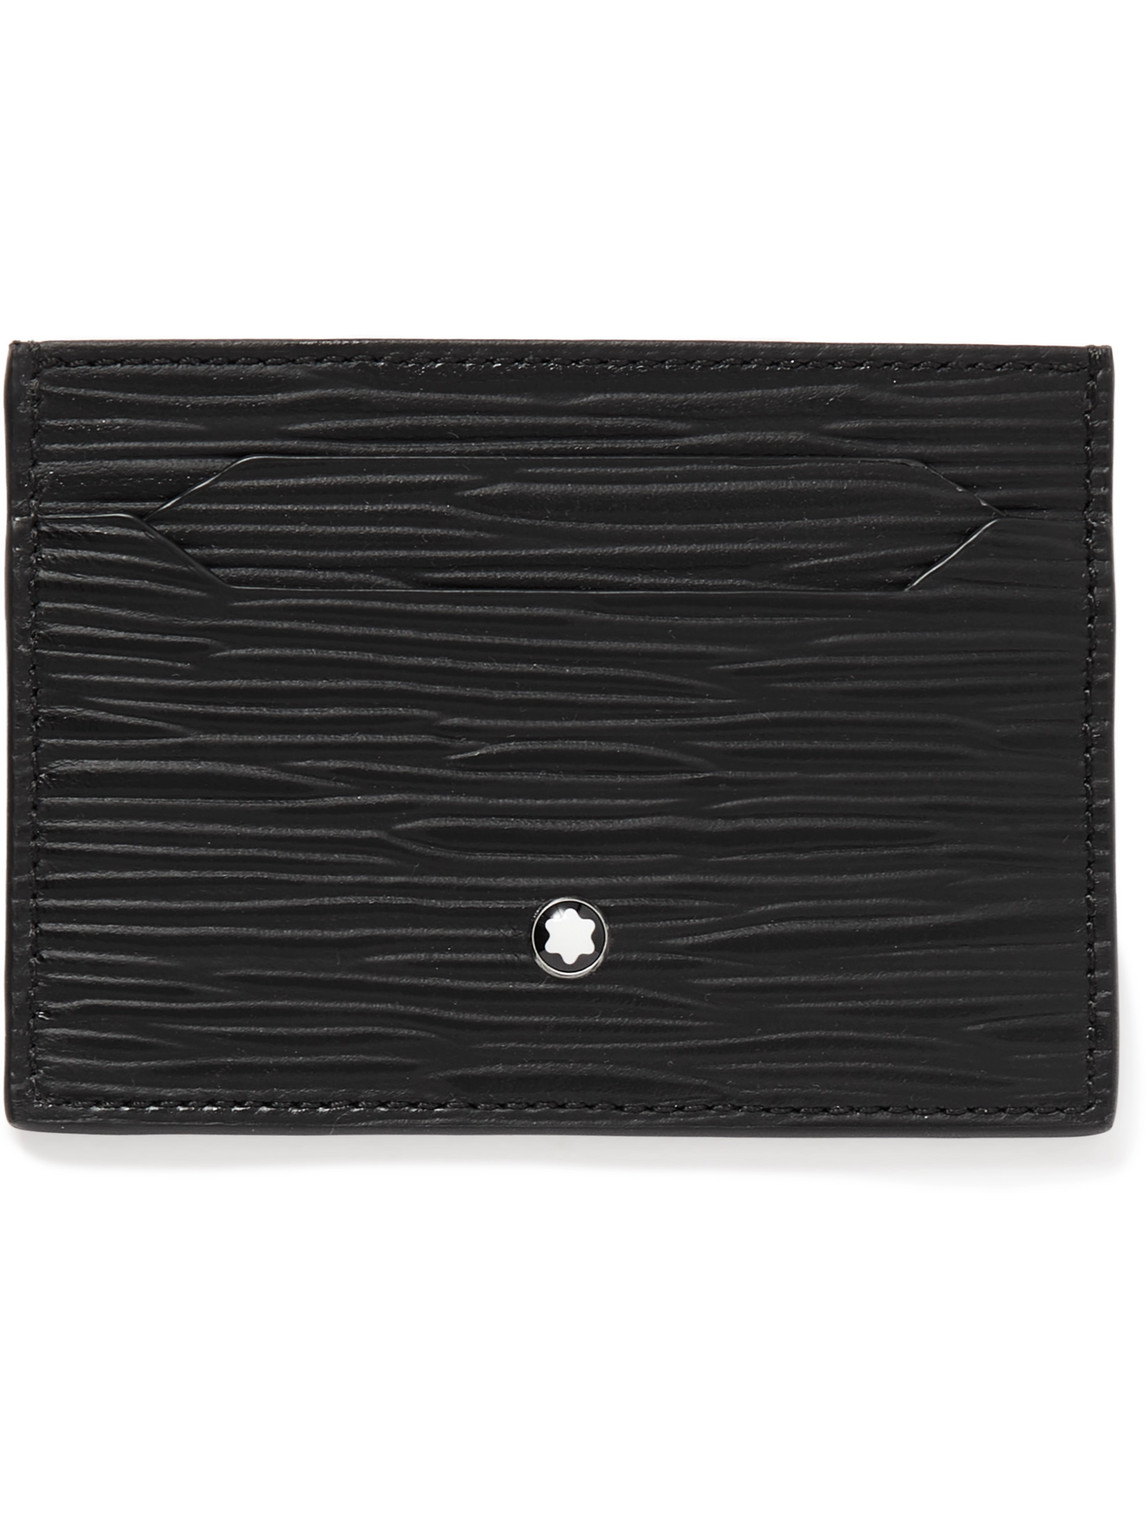 Montblanc Meisterstück 4810 Textured-leather Cardholder In Black